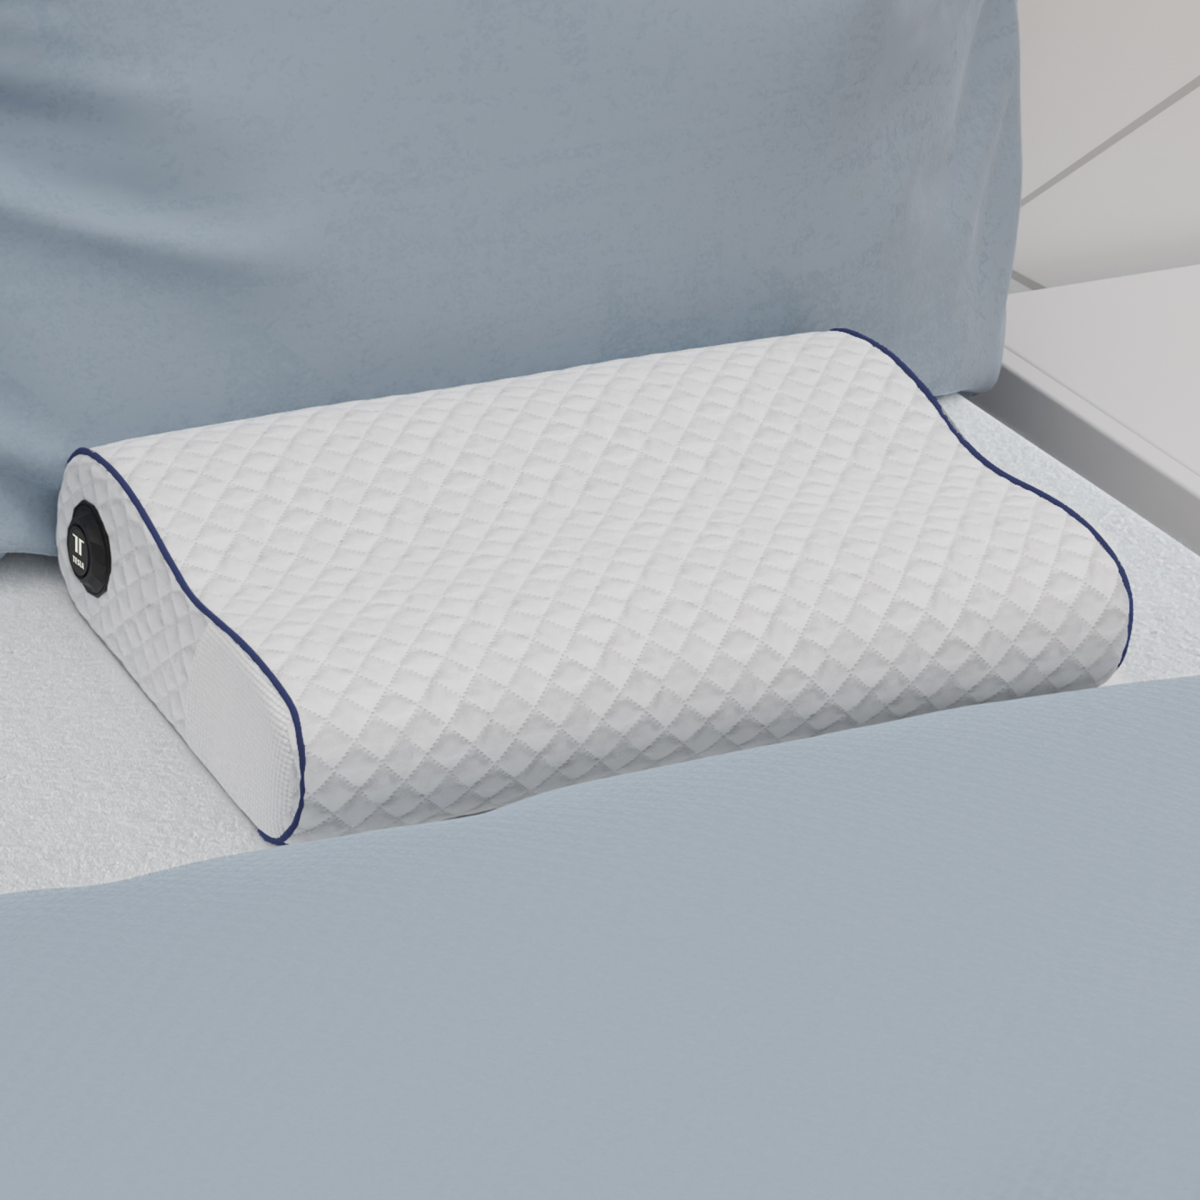 TESLA Smart Pillow